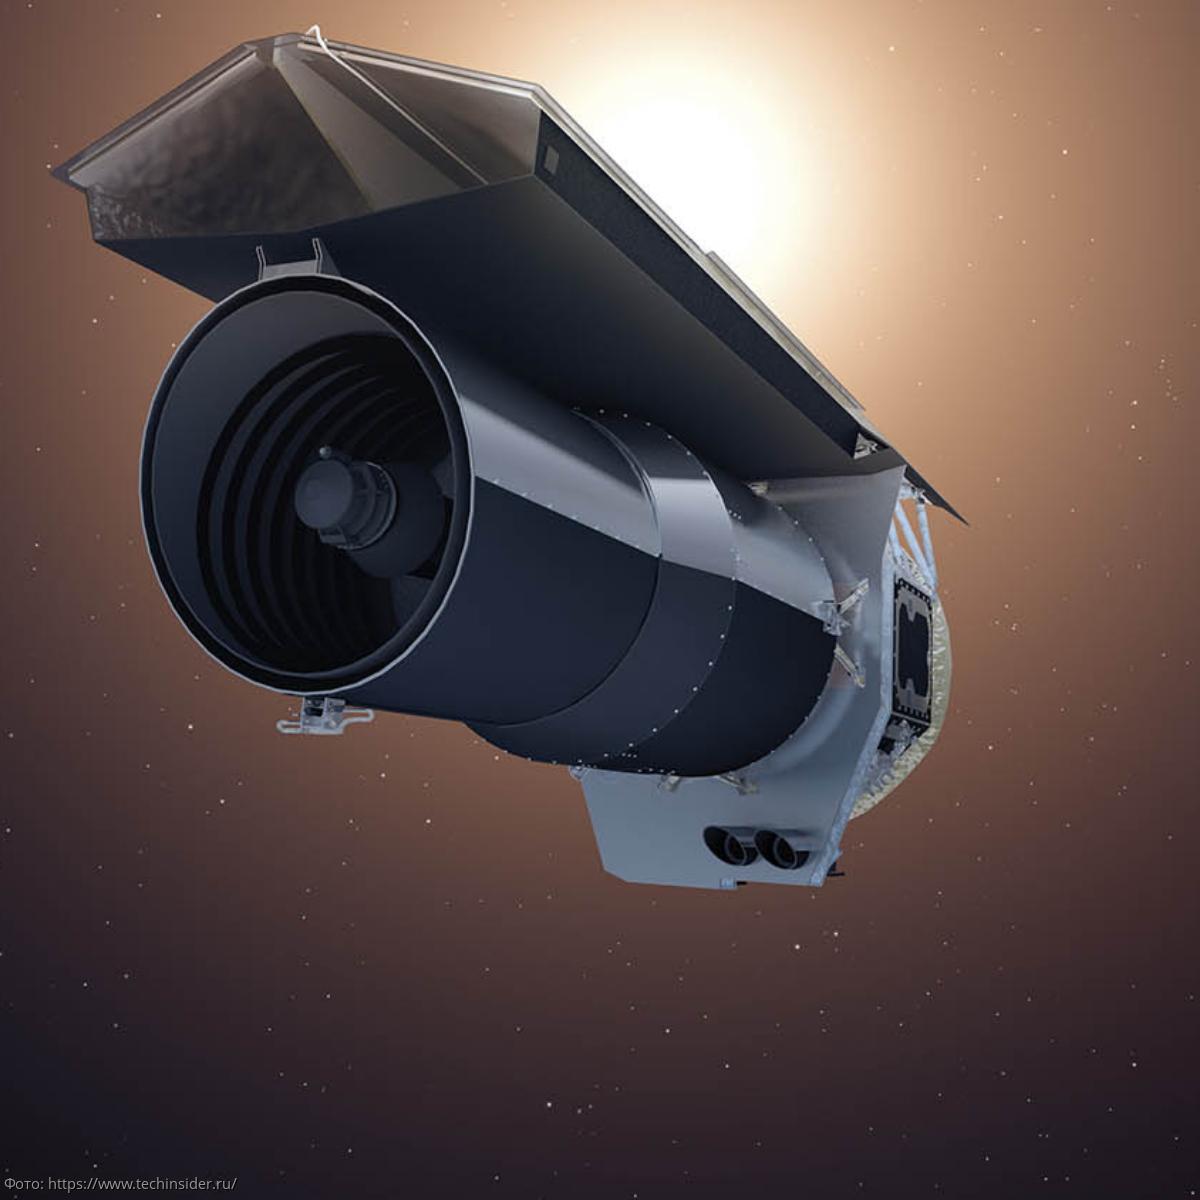 Взгляд в глубину: новые космические телескопы готовятся к запуску